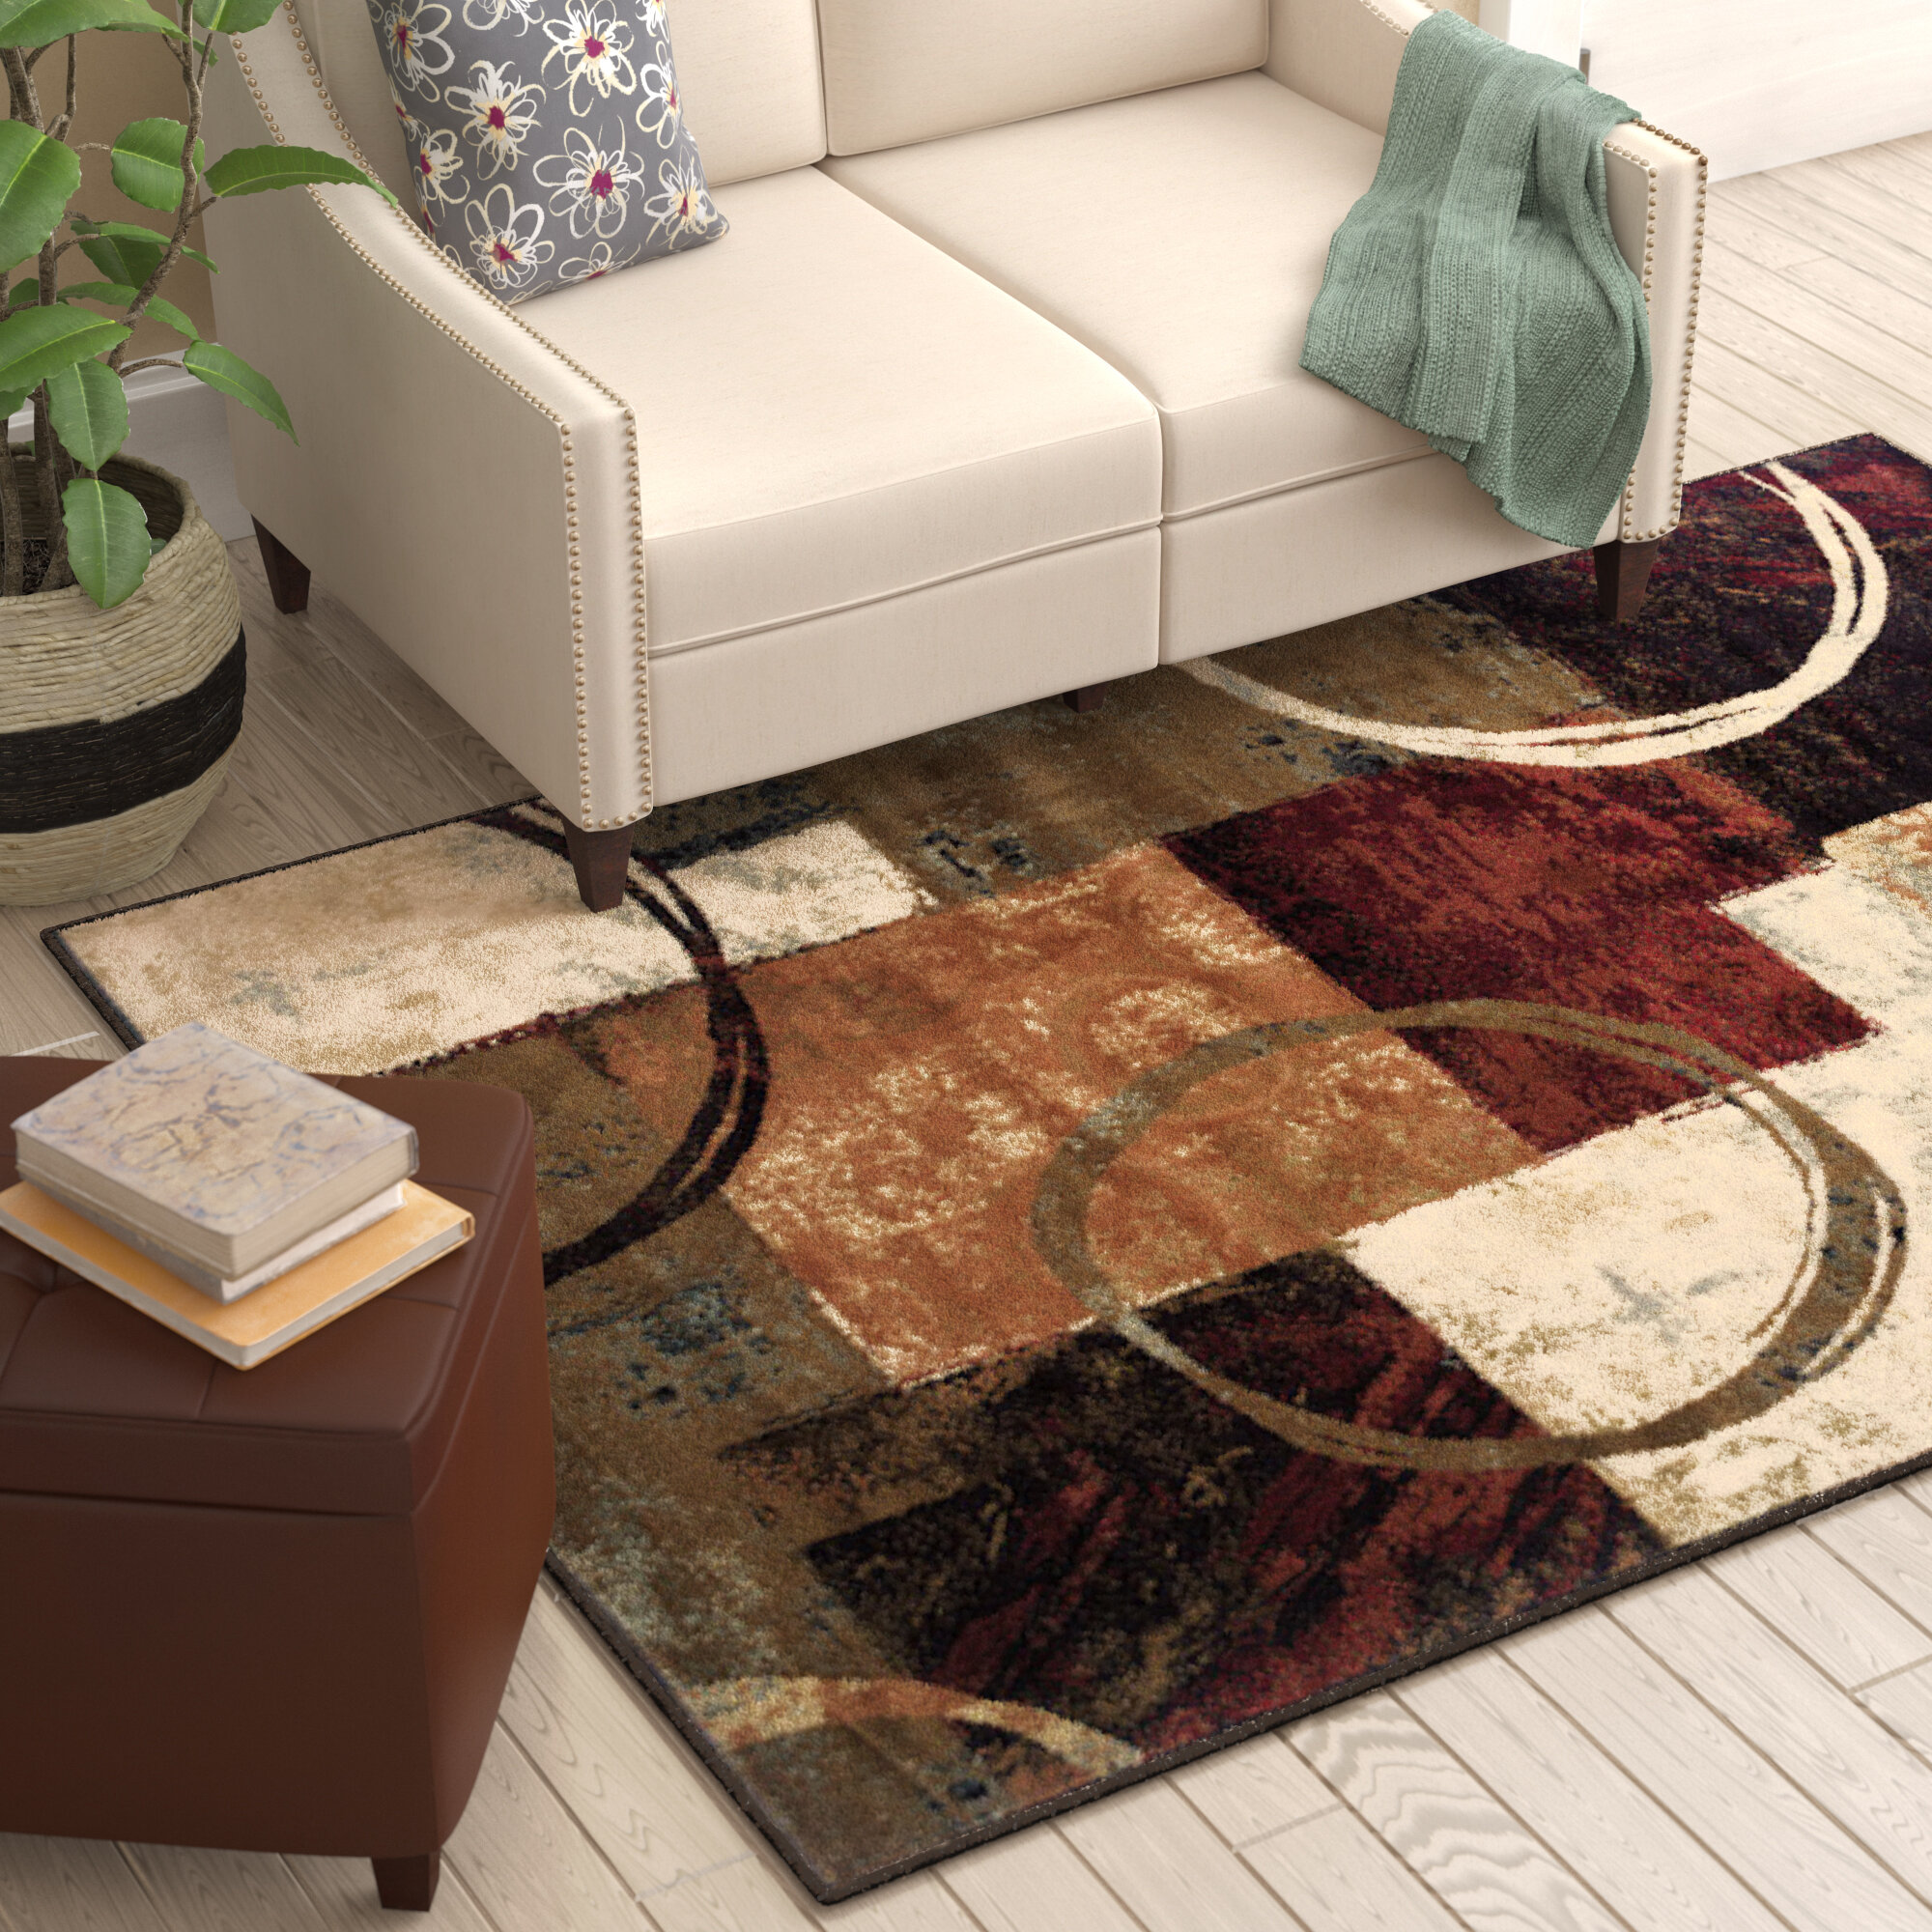 Berber Carpet Colors Samples Carpet Colors Berber Carpet Types Of Carpet